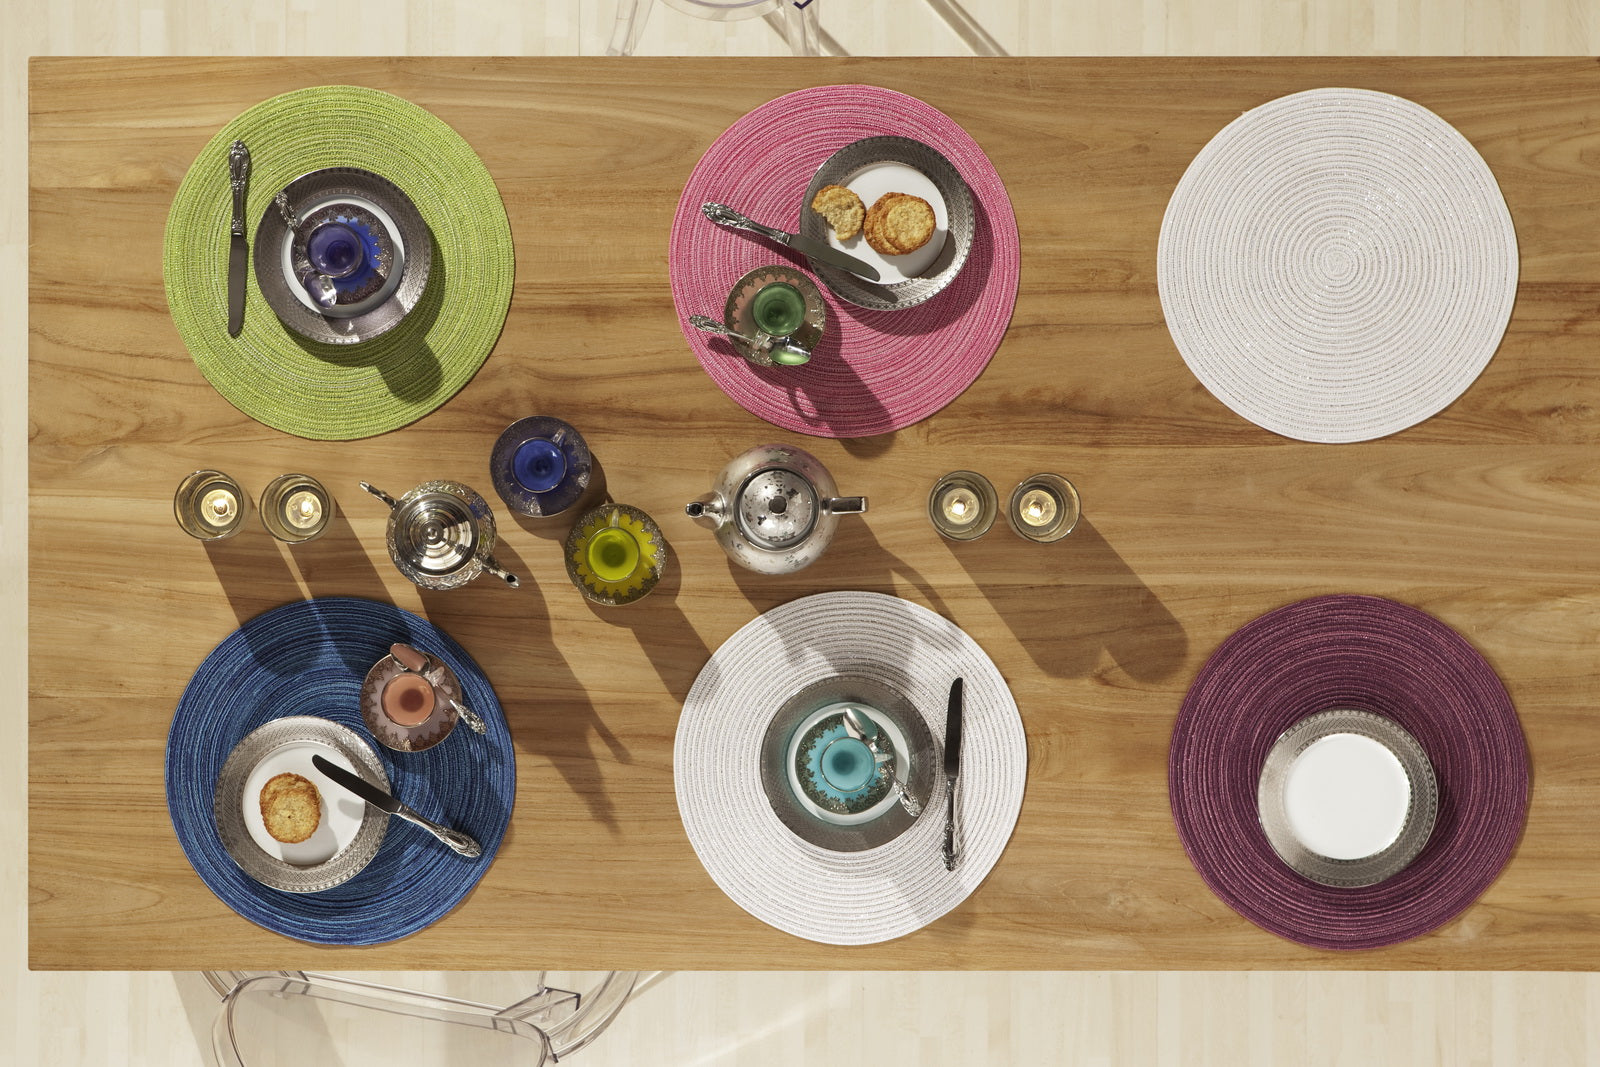 Samba, Tischset rund, mit Glanzgarn, 38cm, 2er Set, in vielen aktuellen Farben